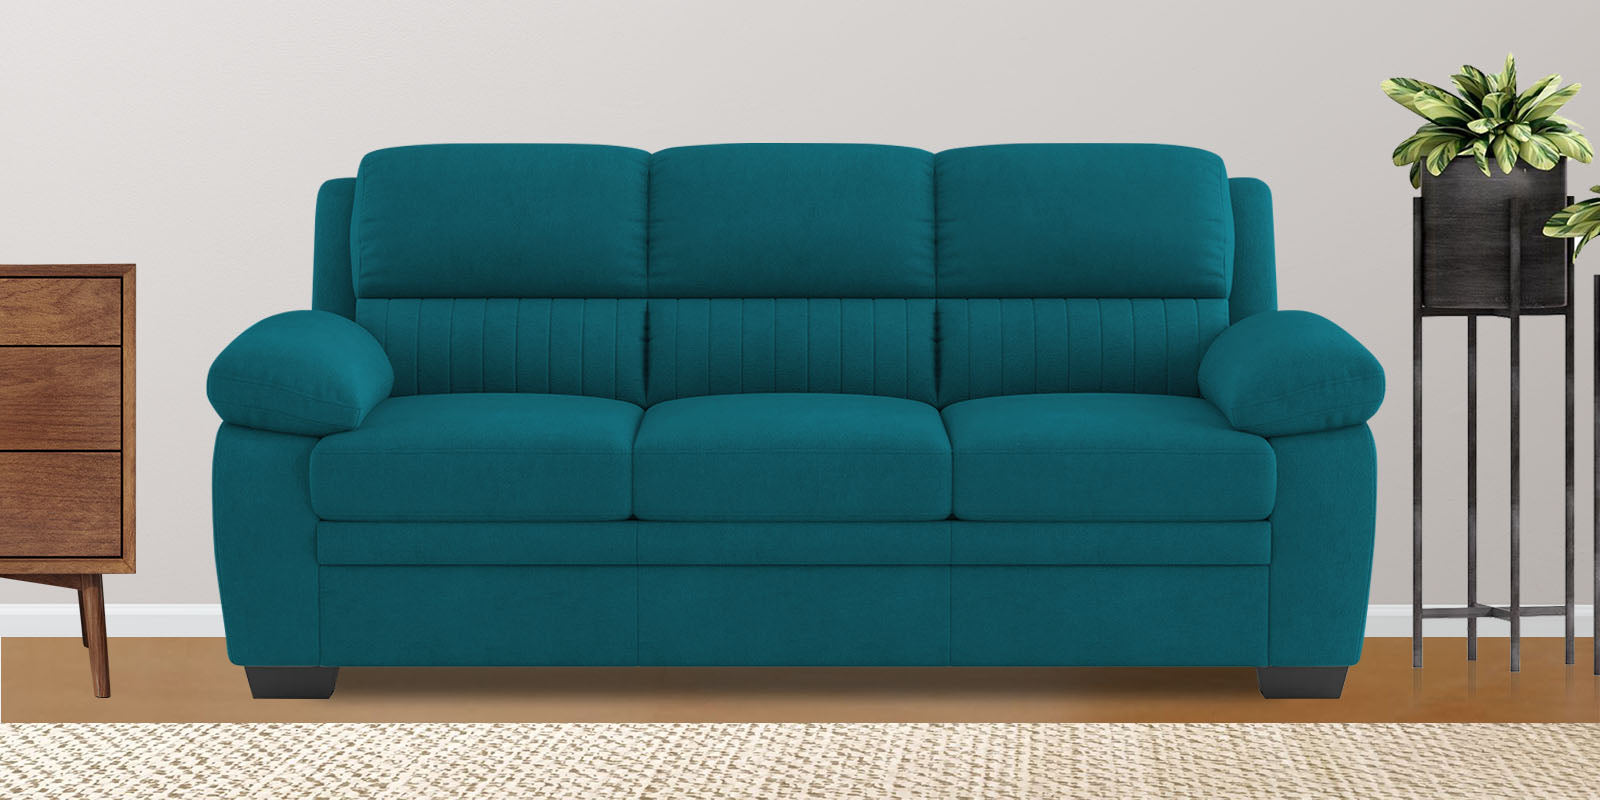 Kraze Velvet 3 Seater Sofa in Pine green Colour